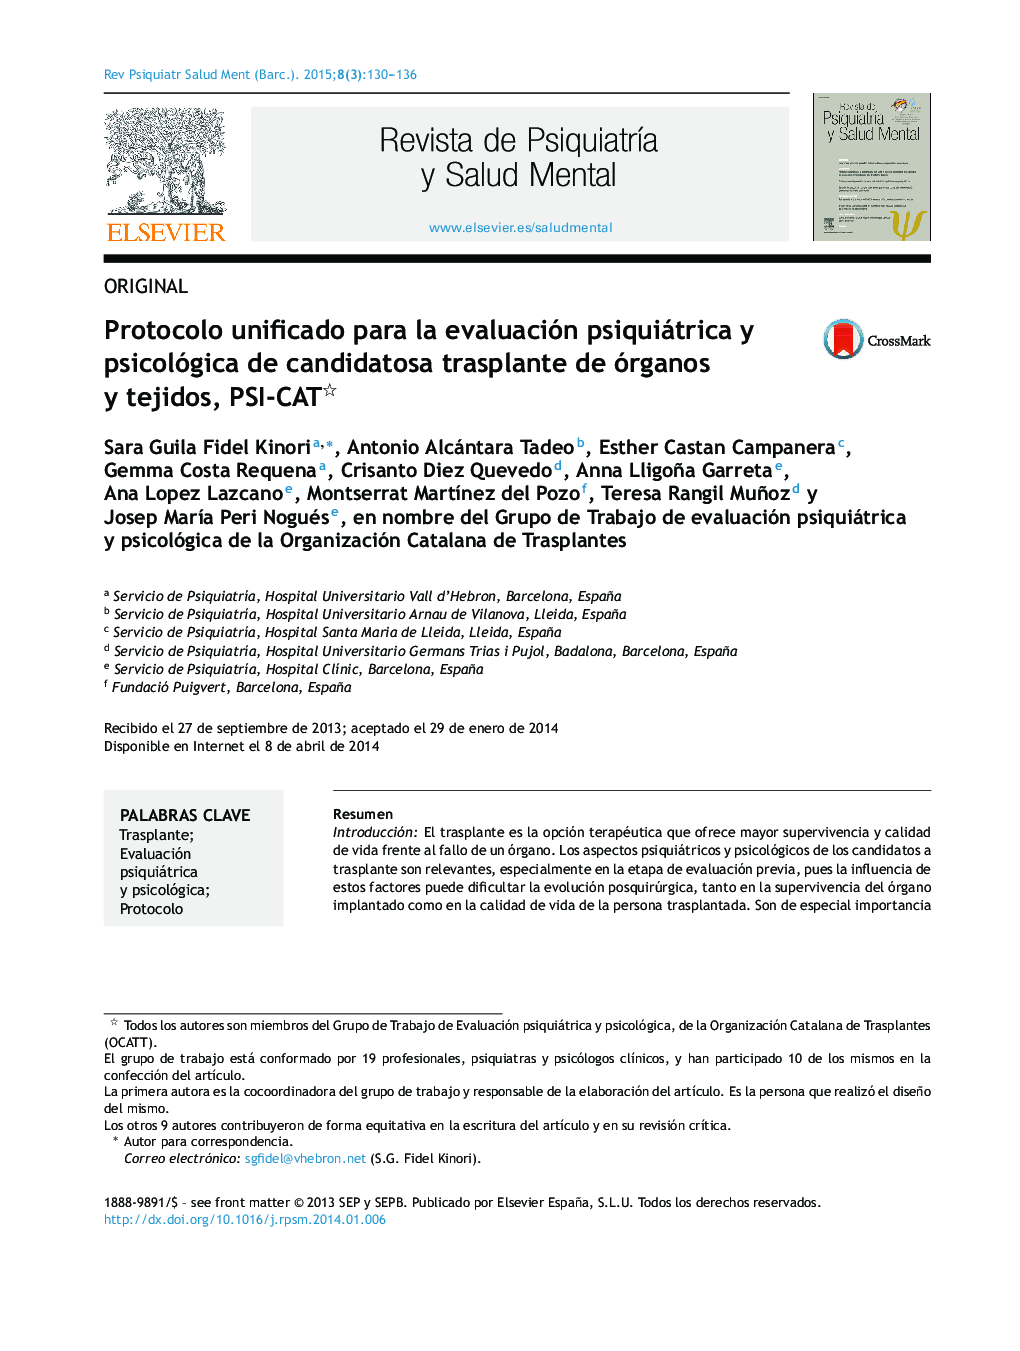 Protocolo unificado para la evaluación psiquiátrica y psicológica de candidatosa trasplante de órganos y tejidos, PSI-CAT 